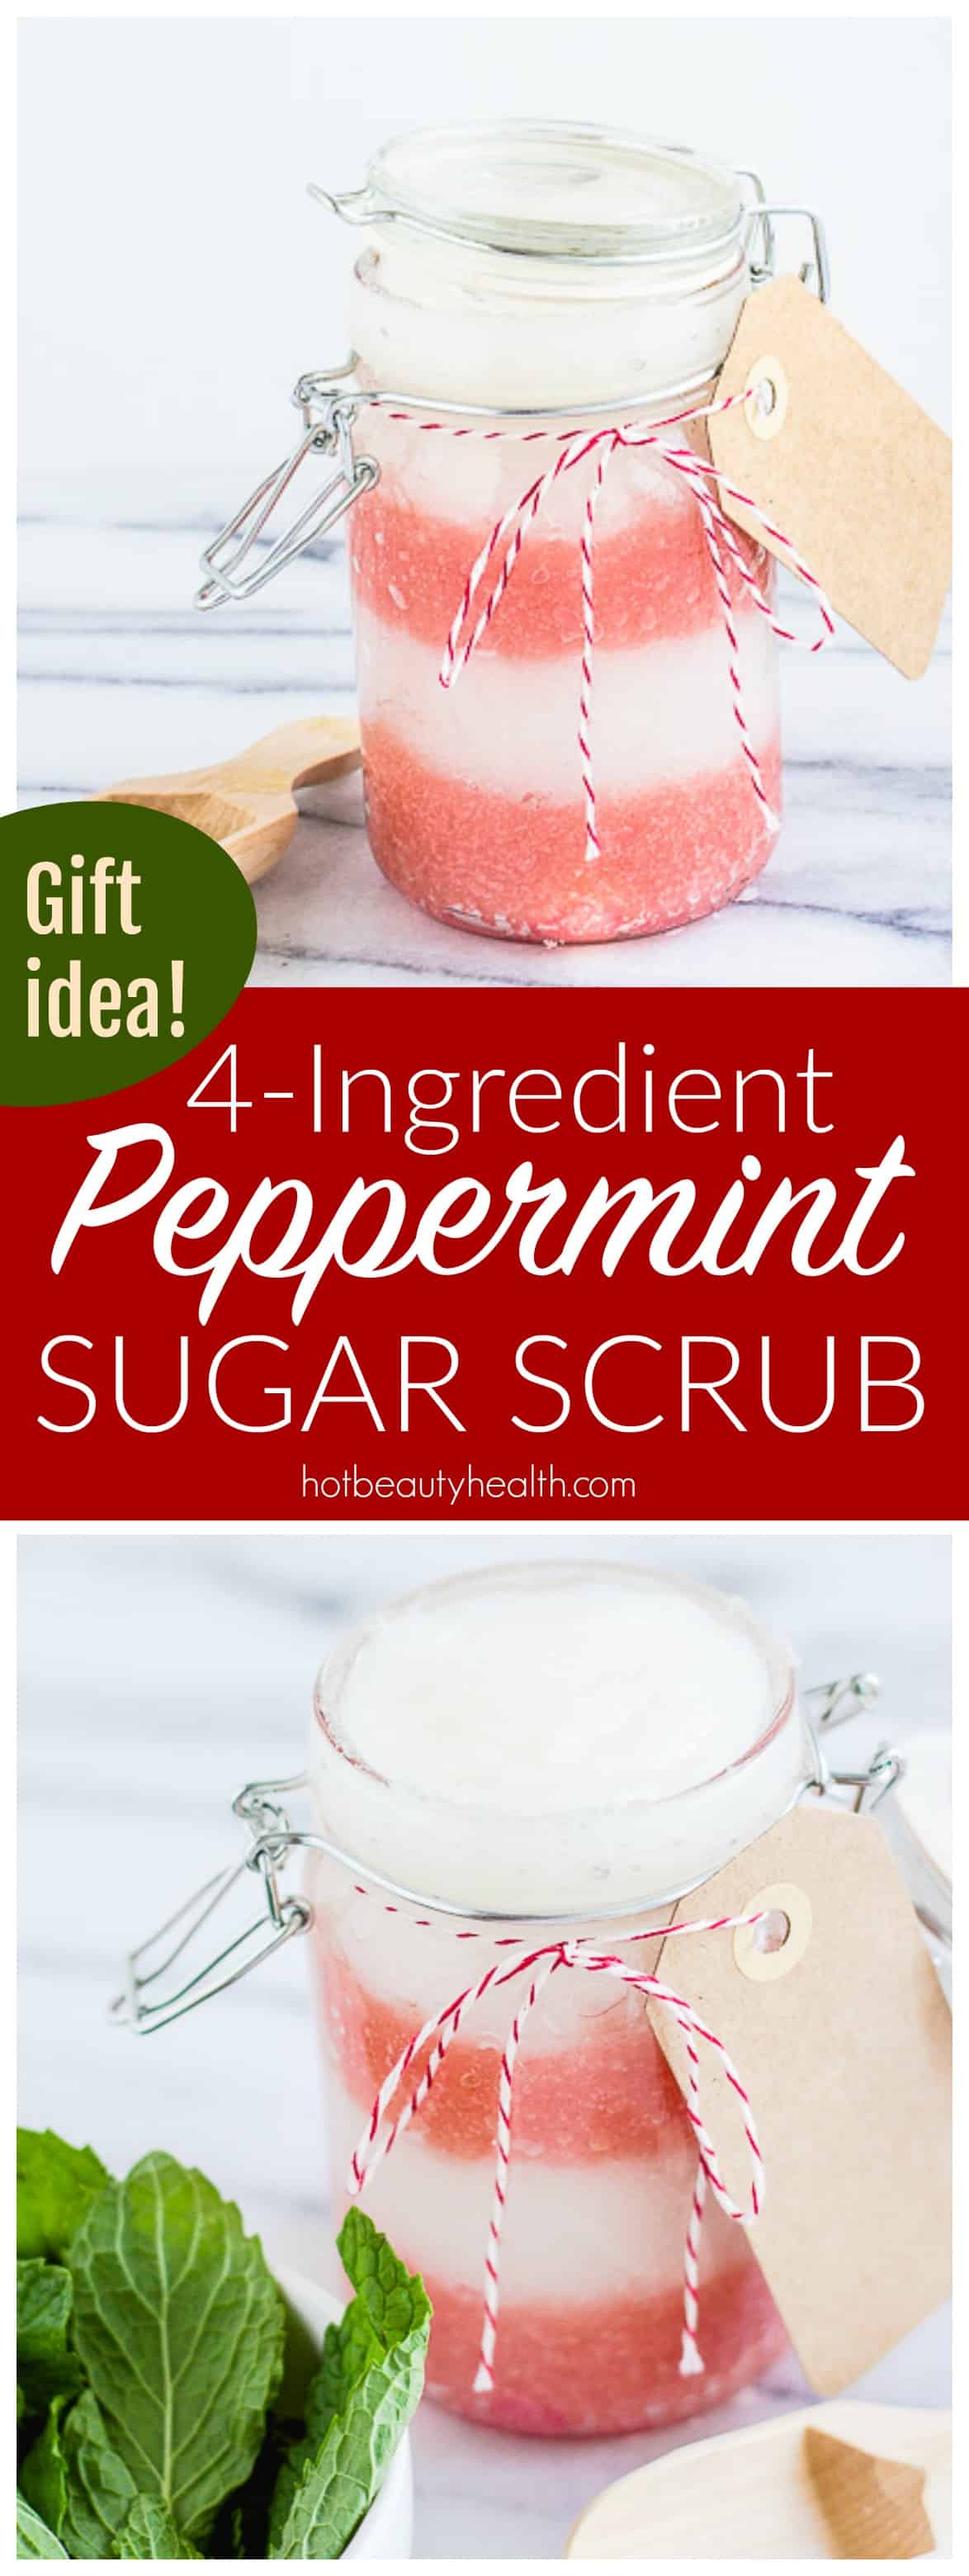 Peppermint Sugar Scrub Recipe | Holiday Gift Idea!